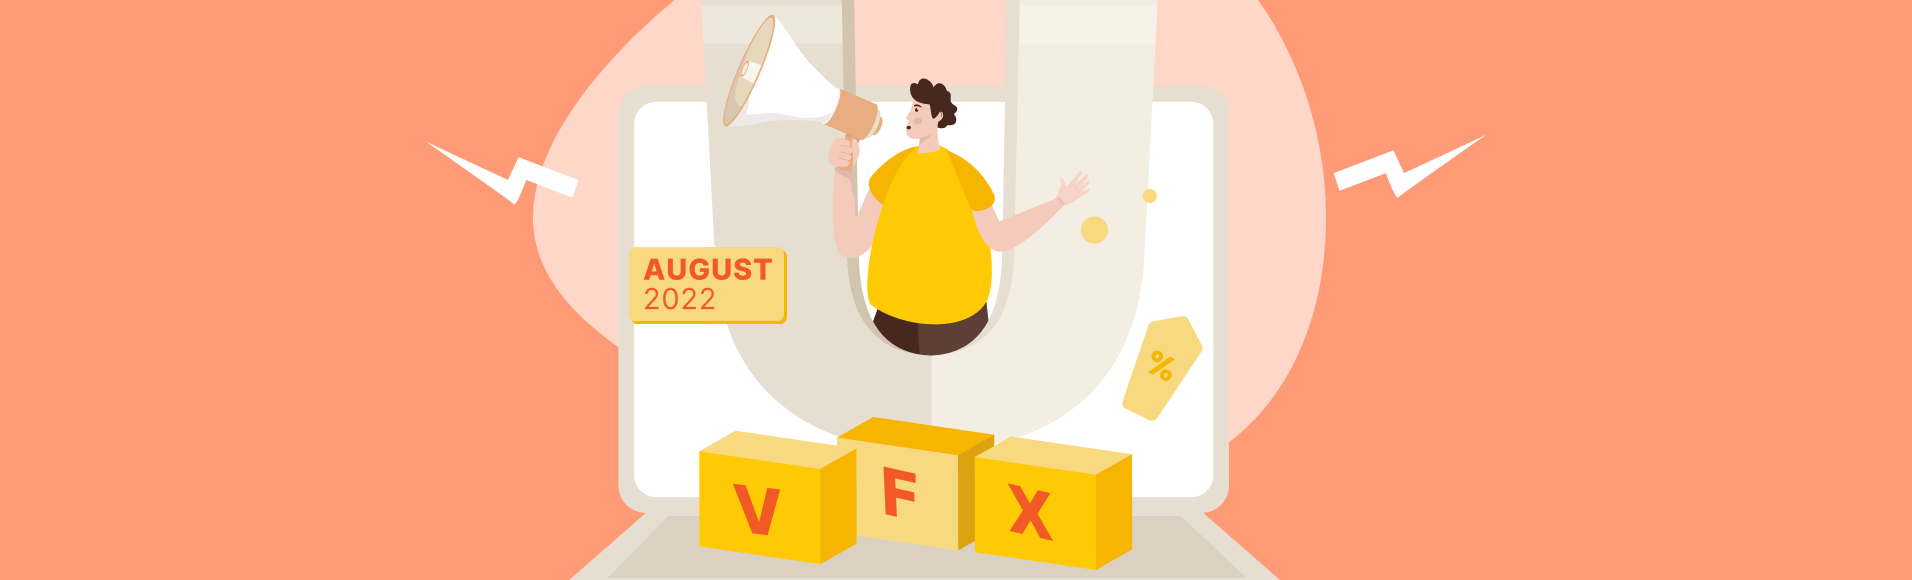 حملات ترويجية vfxAlert في أغسطس 2022